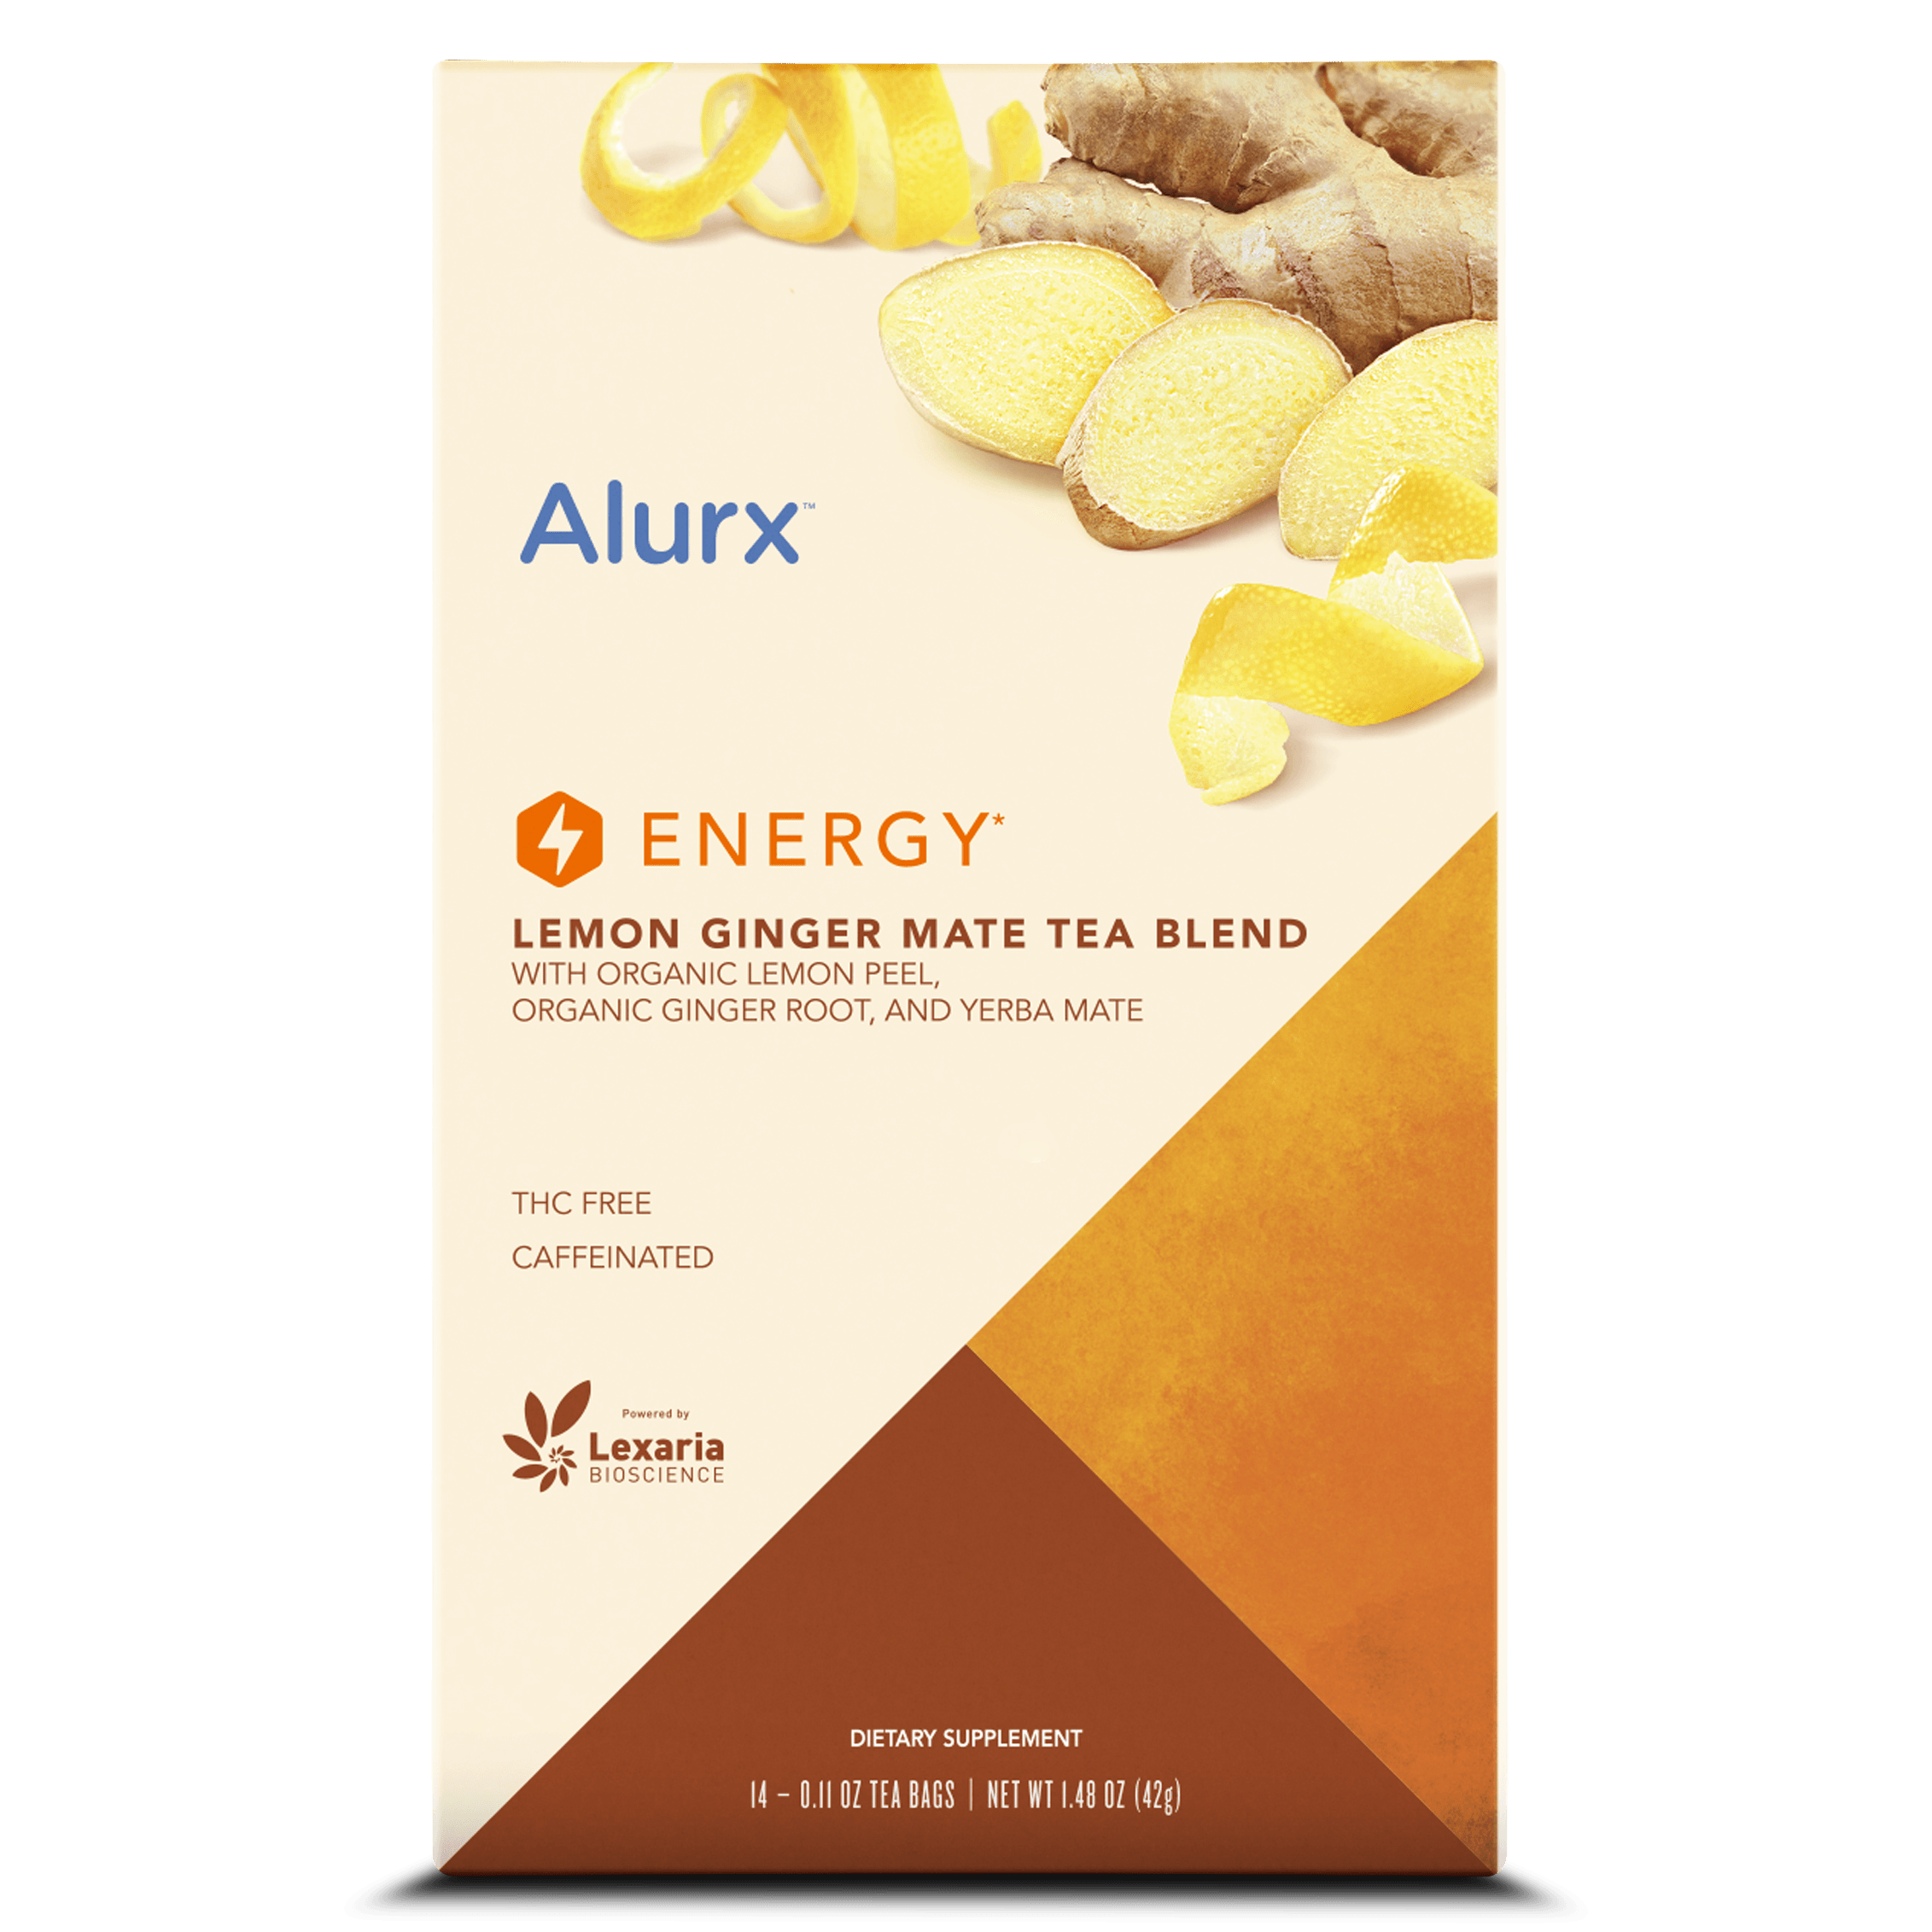 http://alurx.com/cdn/shop/products/01801_Alurx_Lemon_Ginger_Tea_Box_none.png?v=1680030930